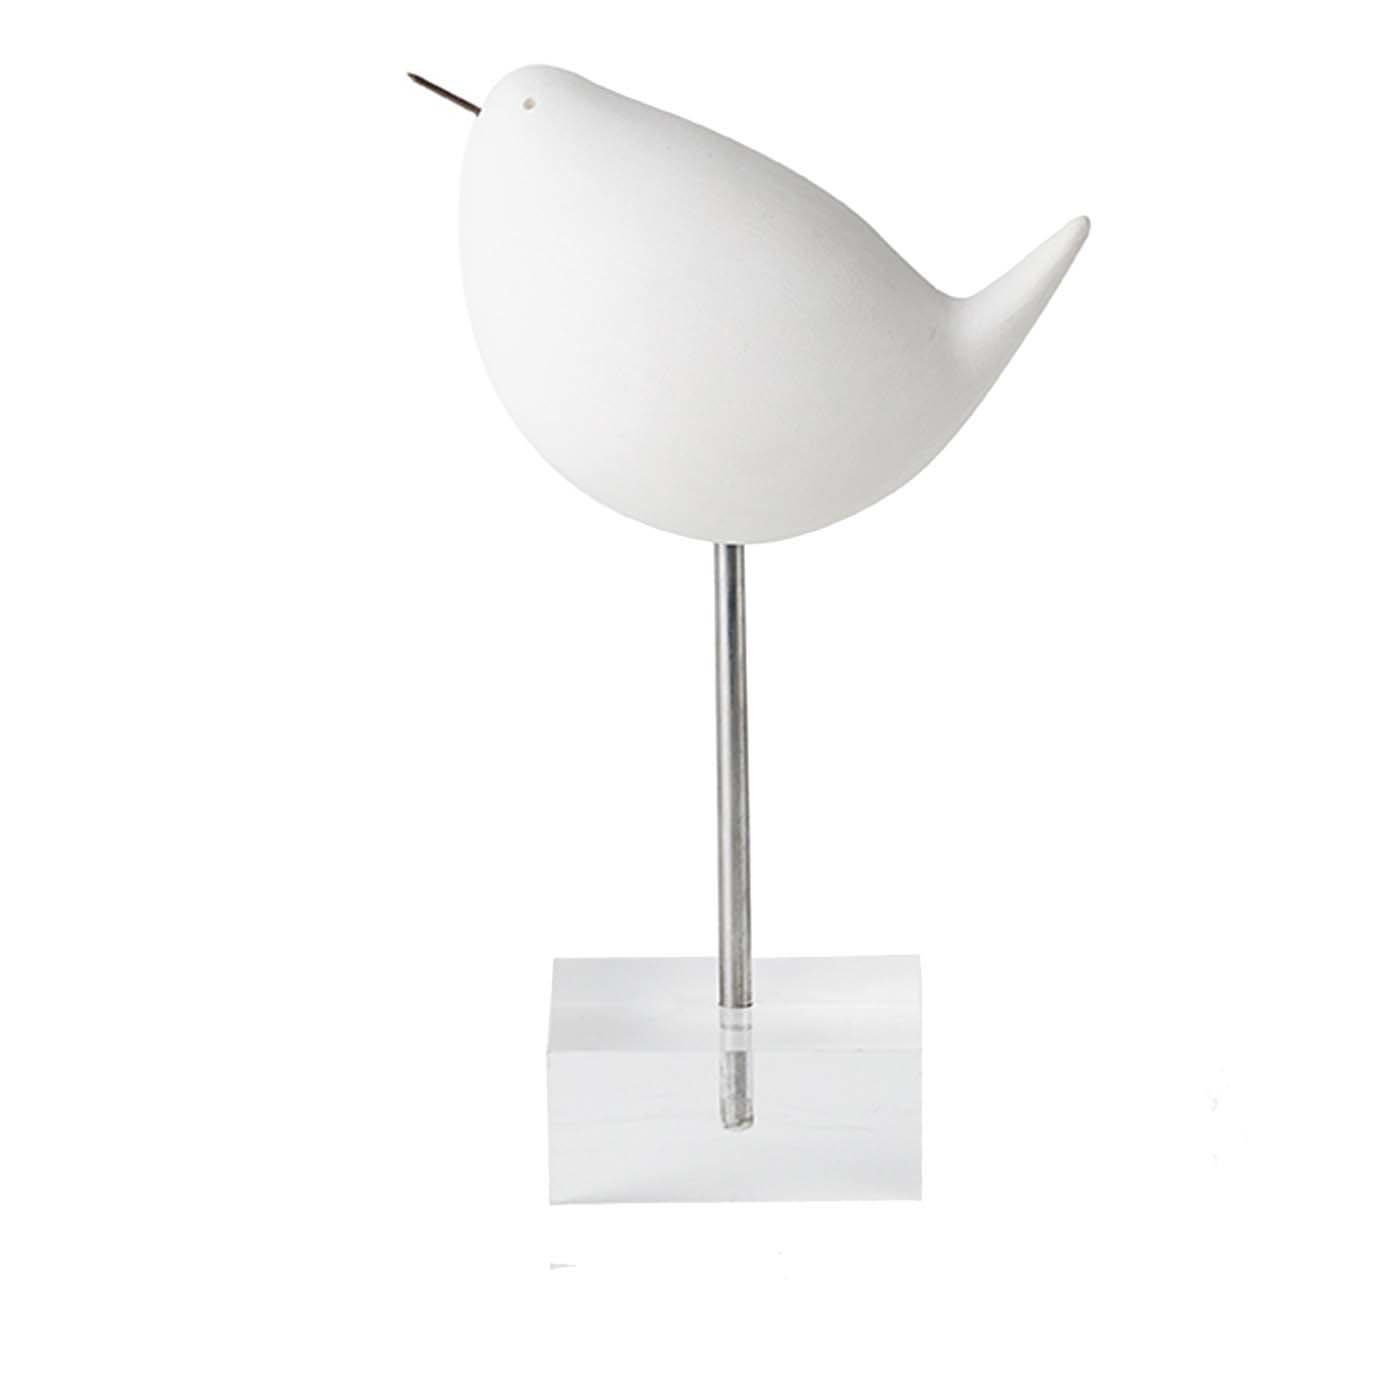 White Bird on a Stand by Aldo Londi #2 - Bitossi Ceramiche